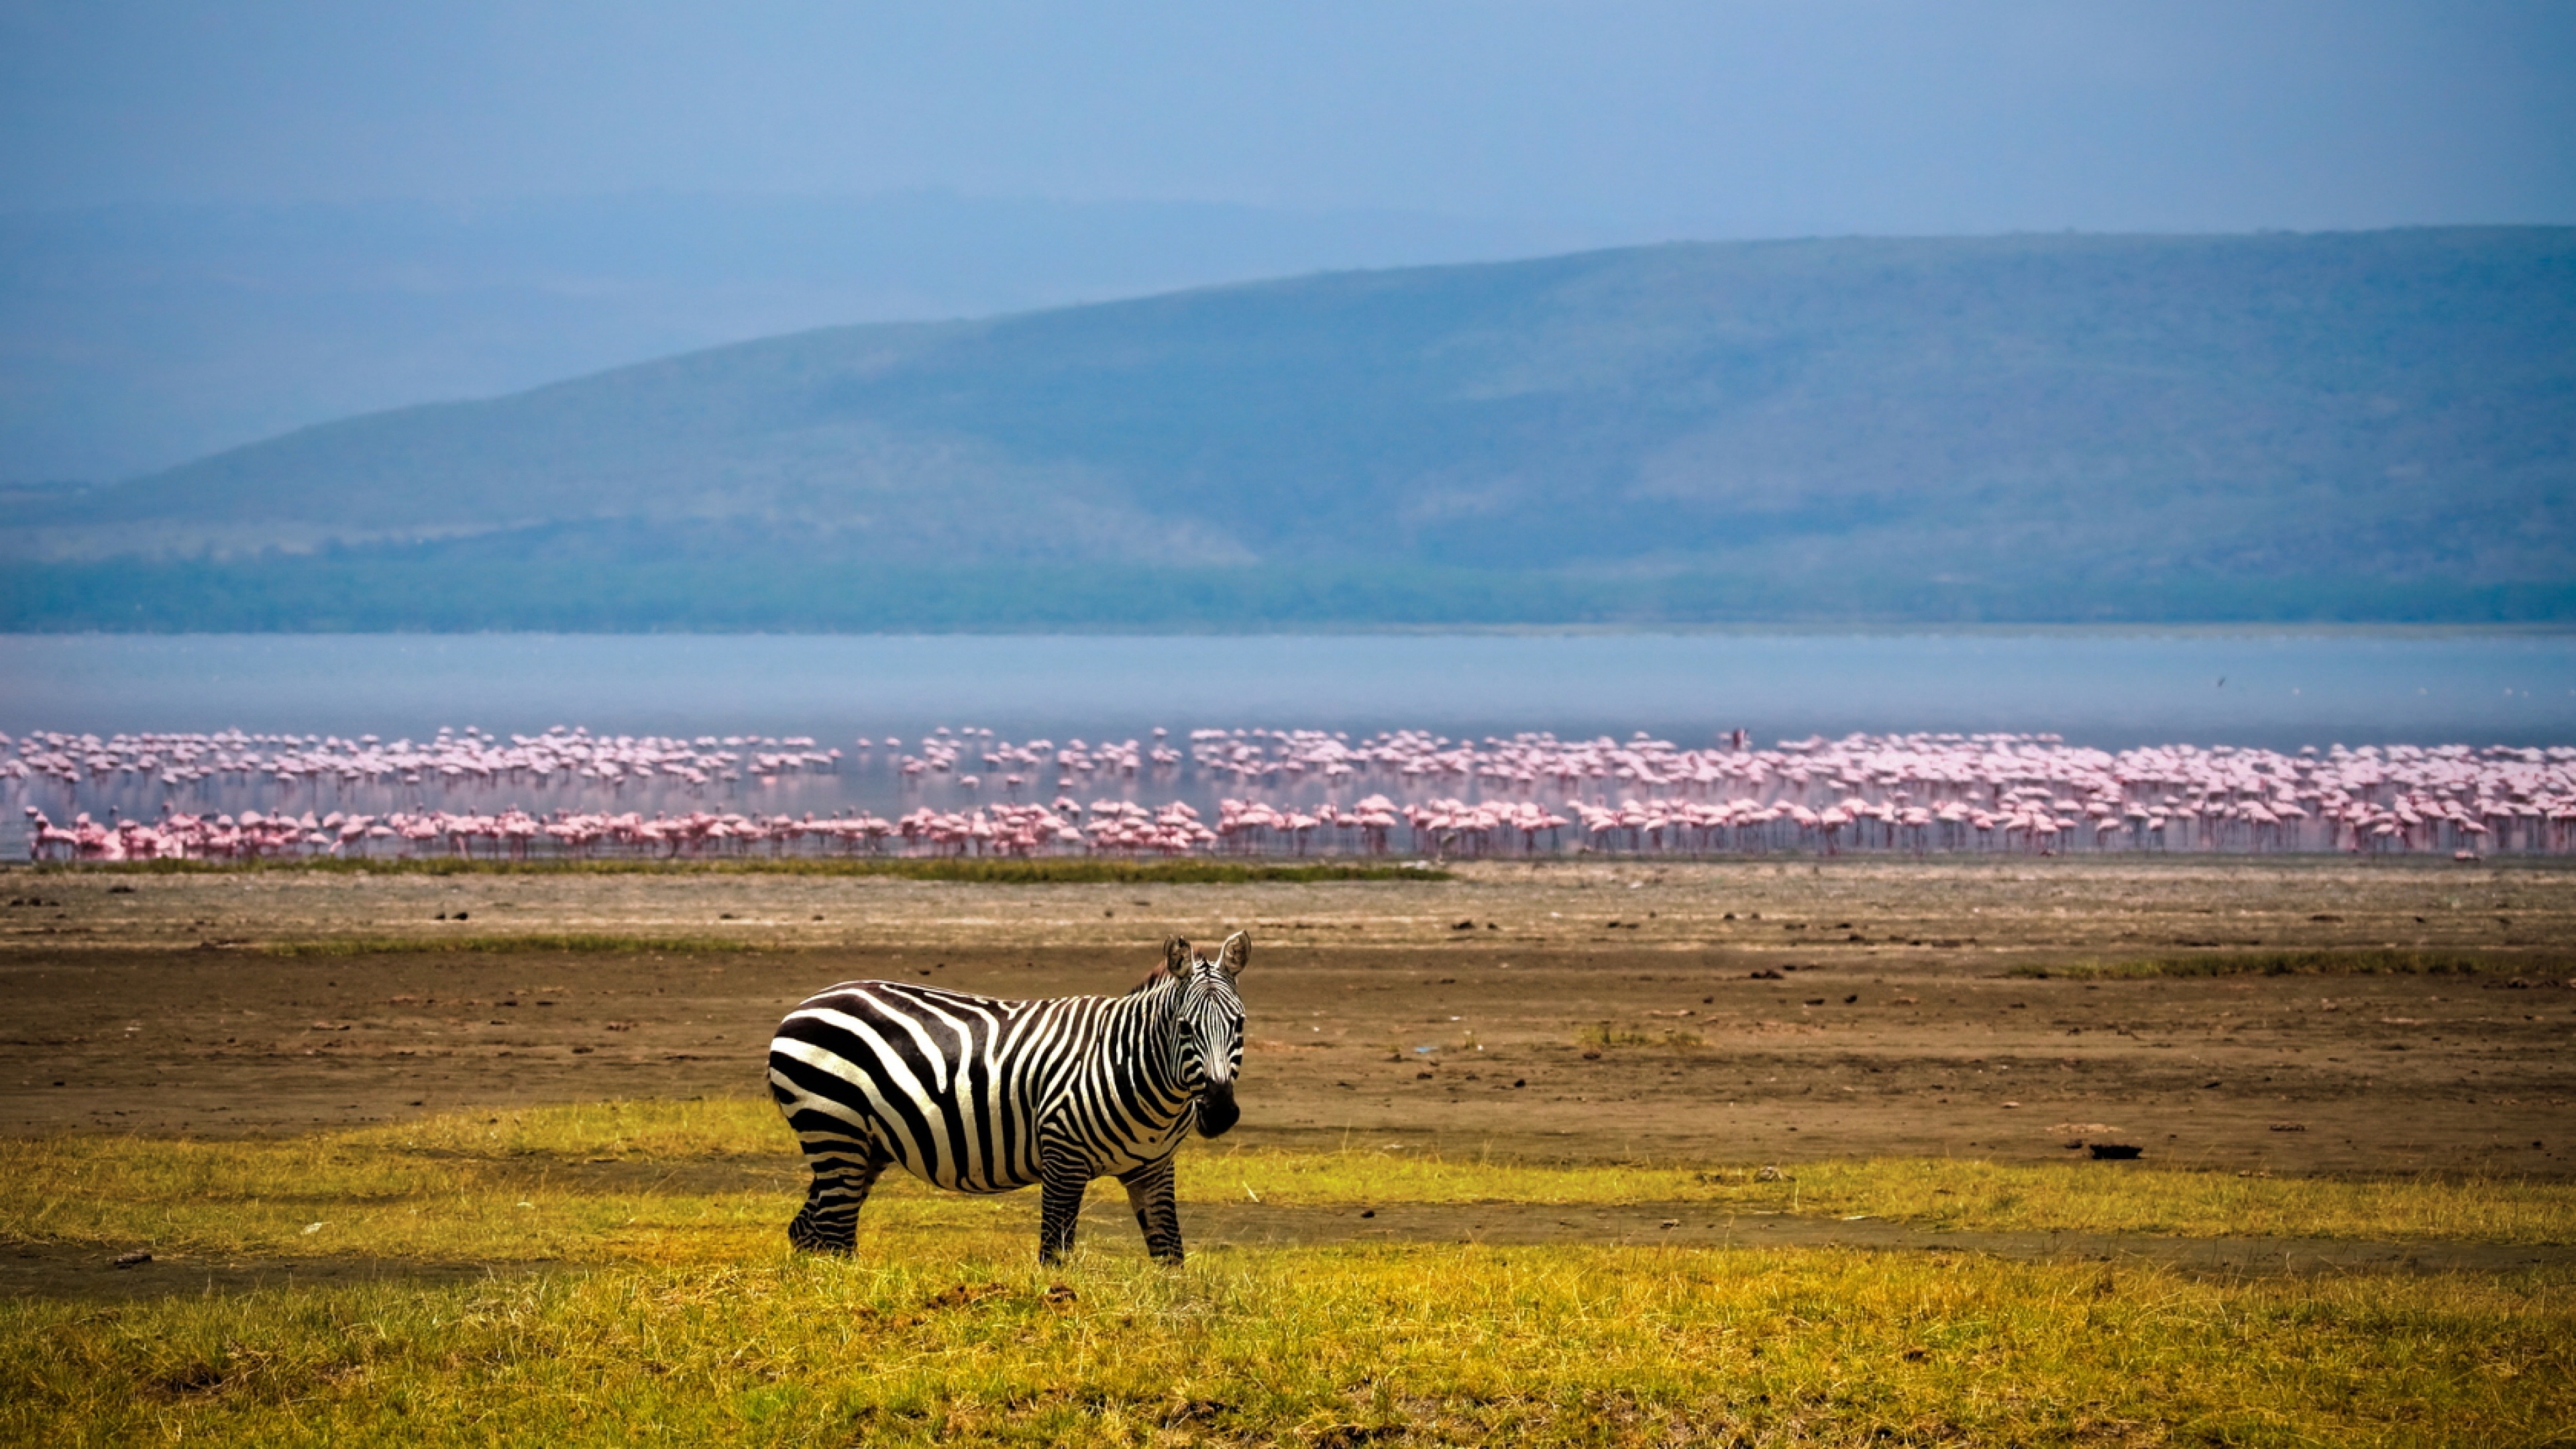 background 4k wallpaper,zebra,grassland,wildlife,natural environment,savanna